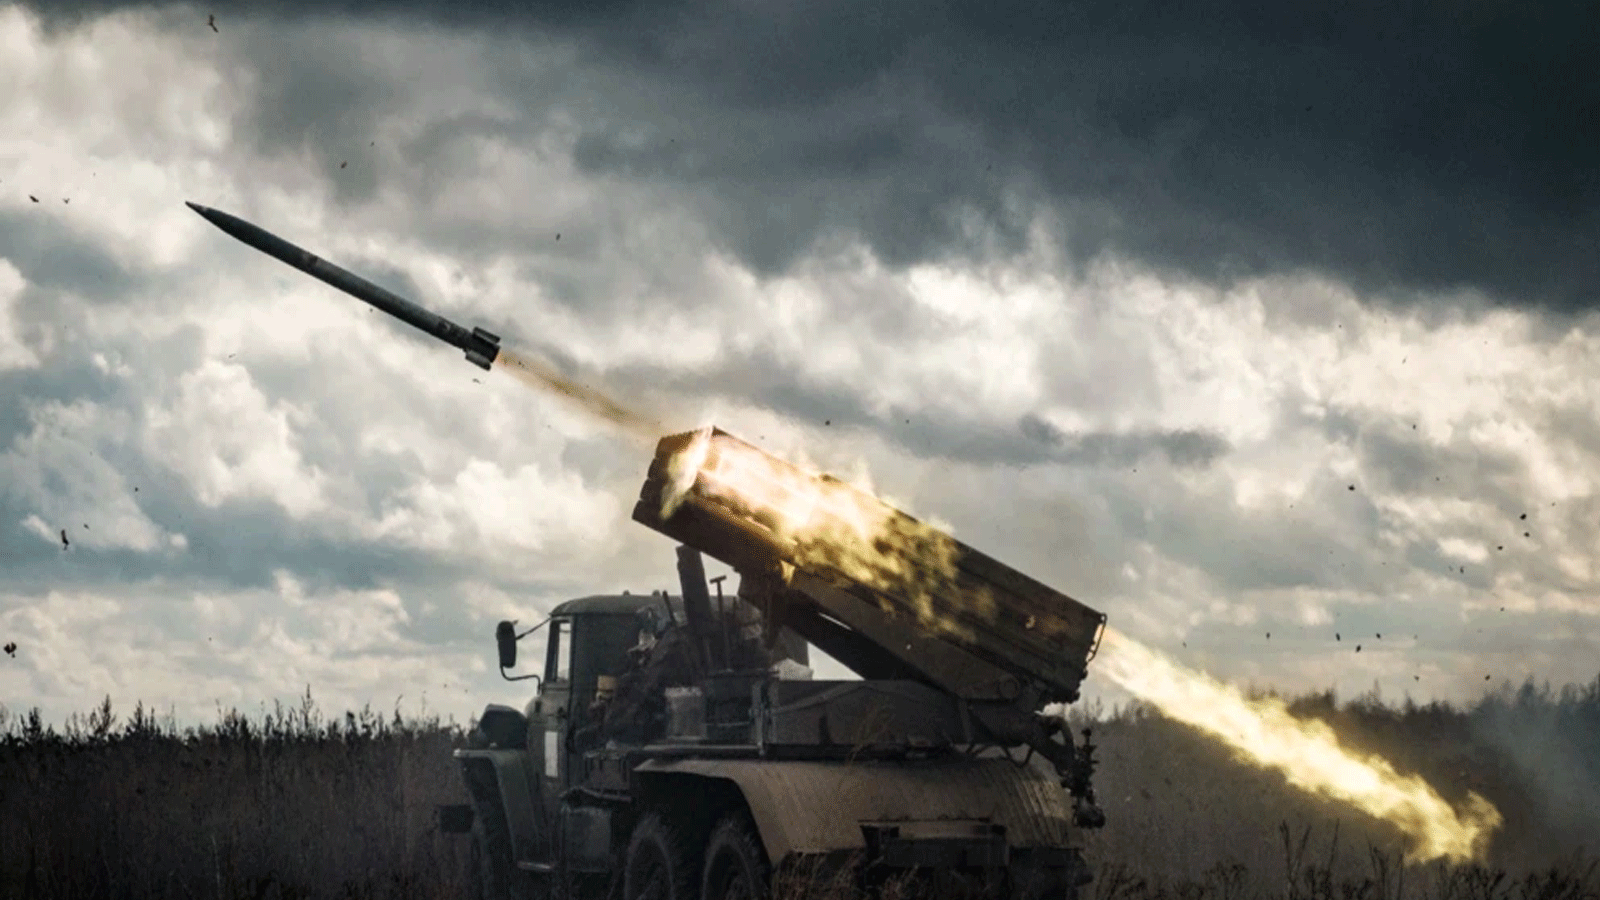 قاذفة صواريخ متعددة من طراز BM-21 تطلق على مواقع روسية في منطقة خاركيف ، أوكرانيا.